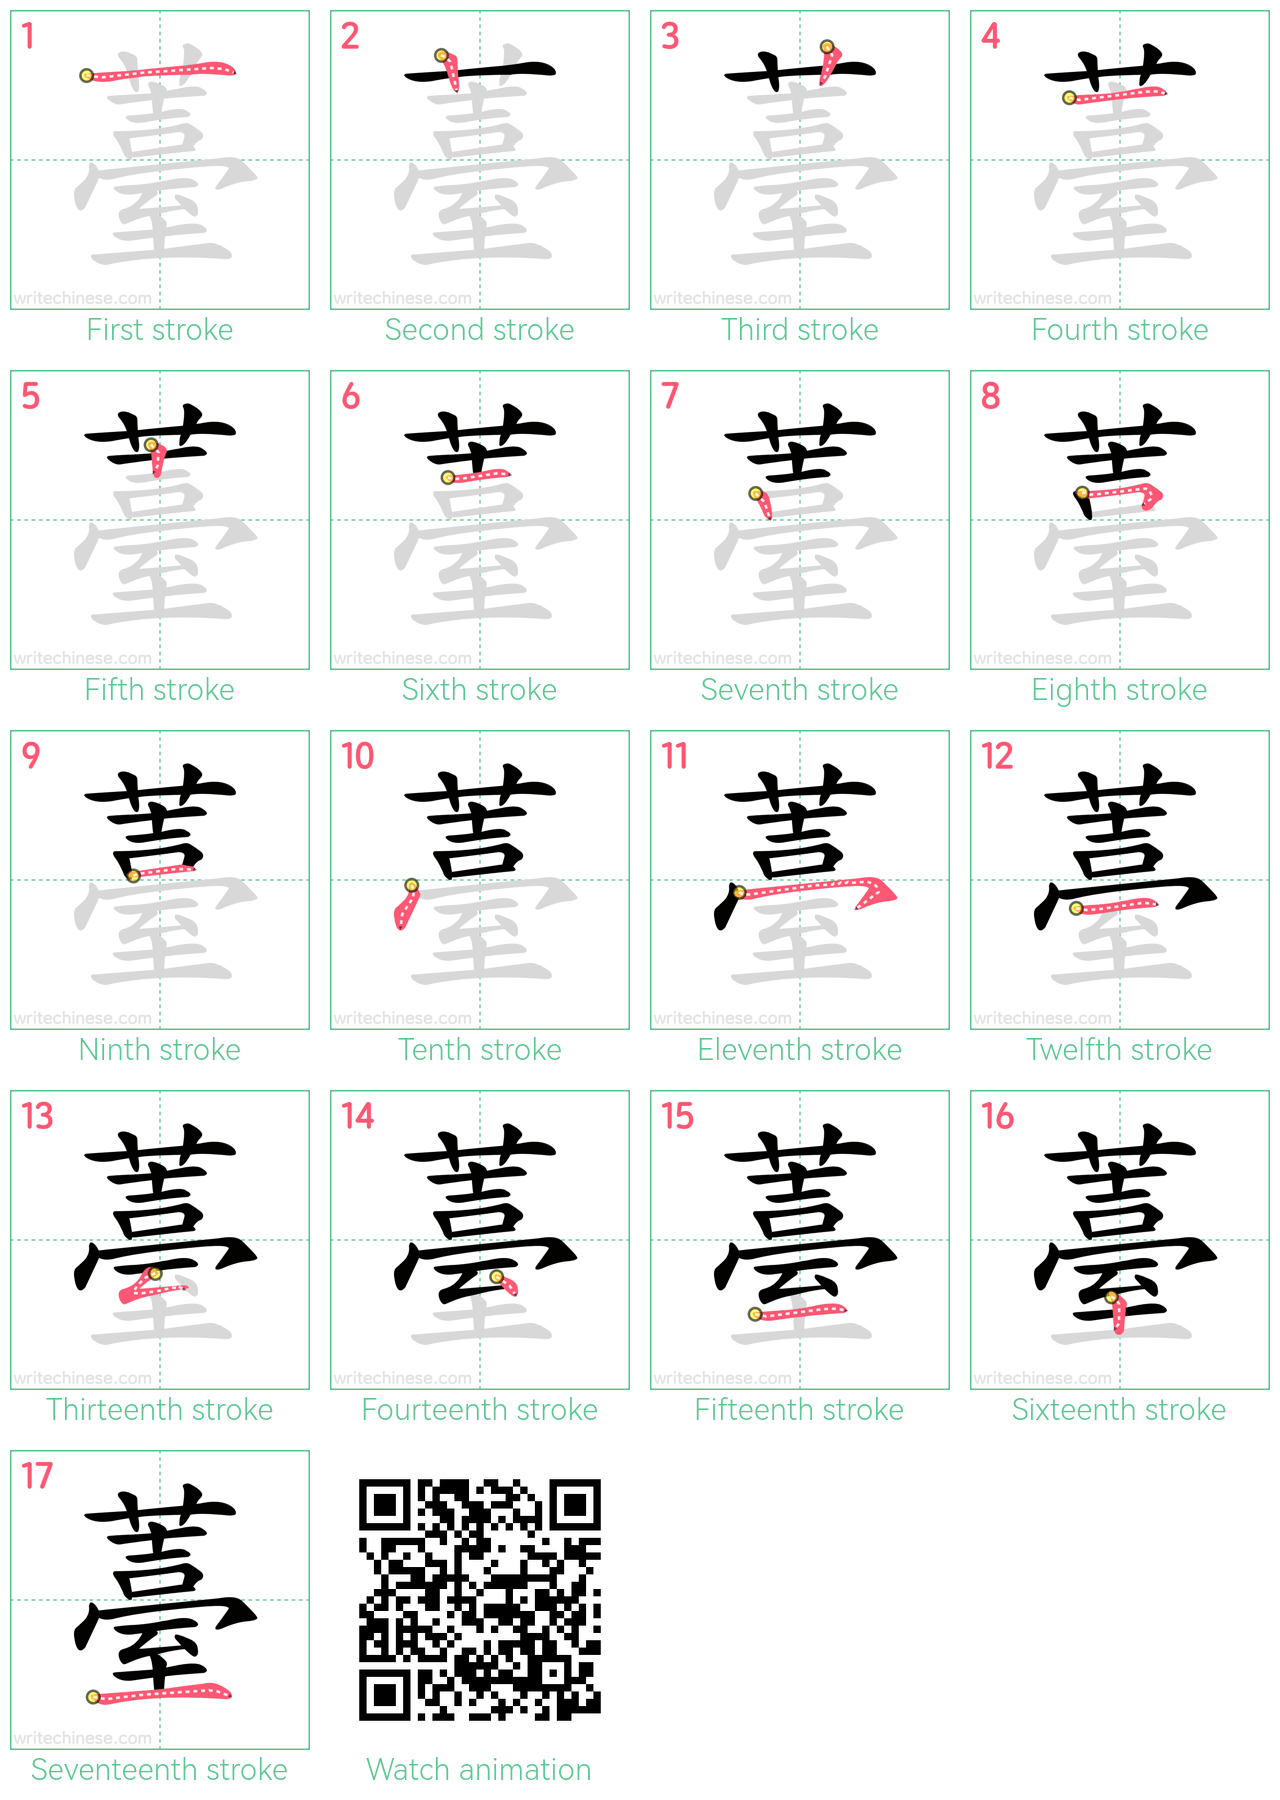 薹 step-by-step stroke order diagrams